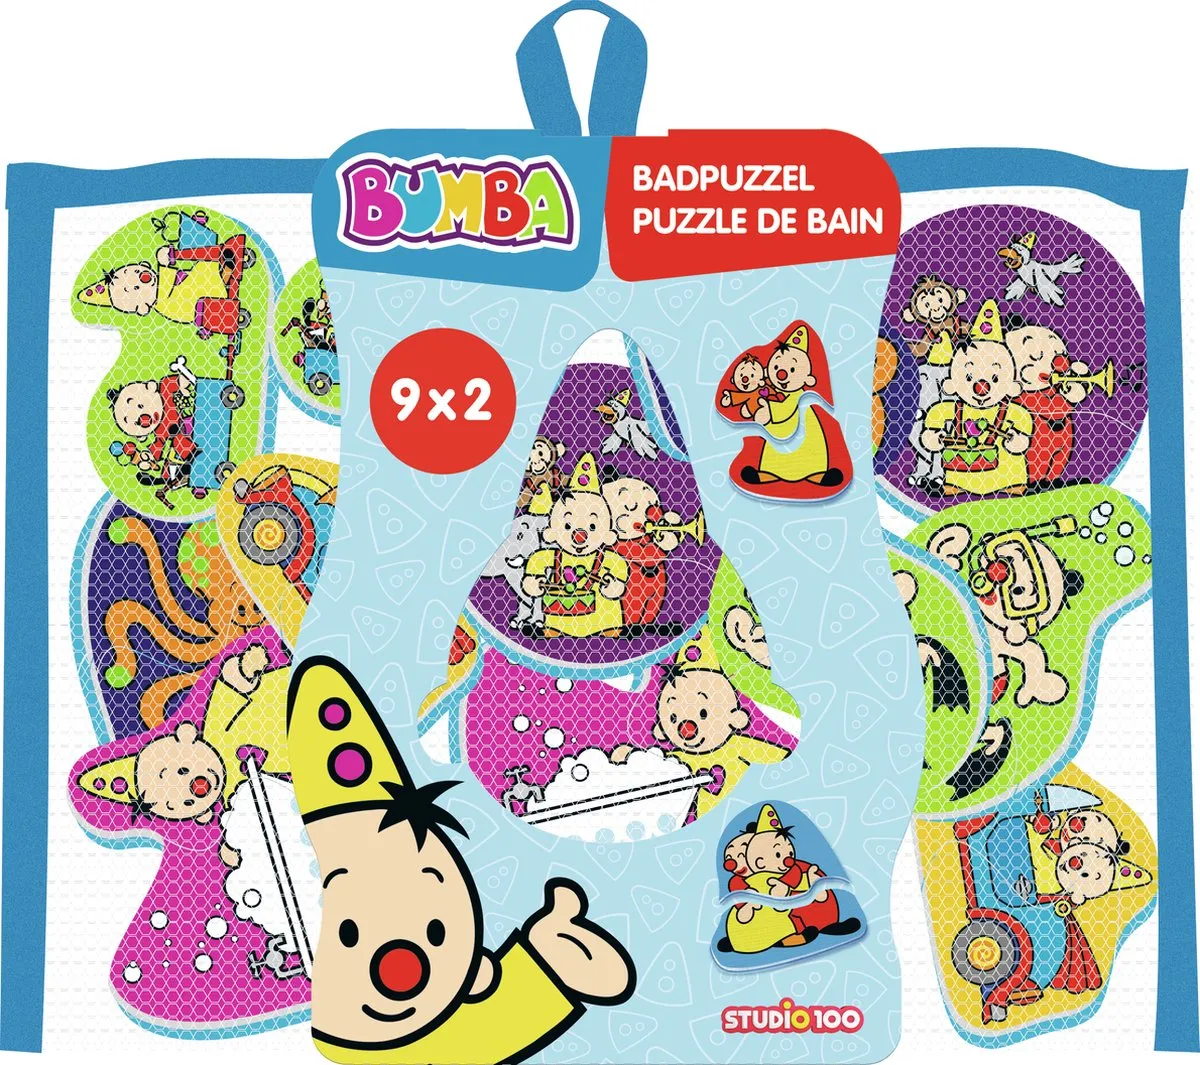 Bumba badpuzzel - 9 badpuzzels uit 2 delen - kleeft op de badrand speelgoed